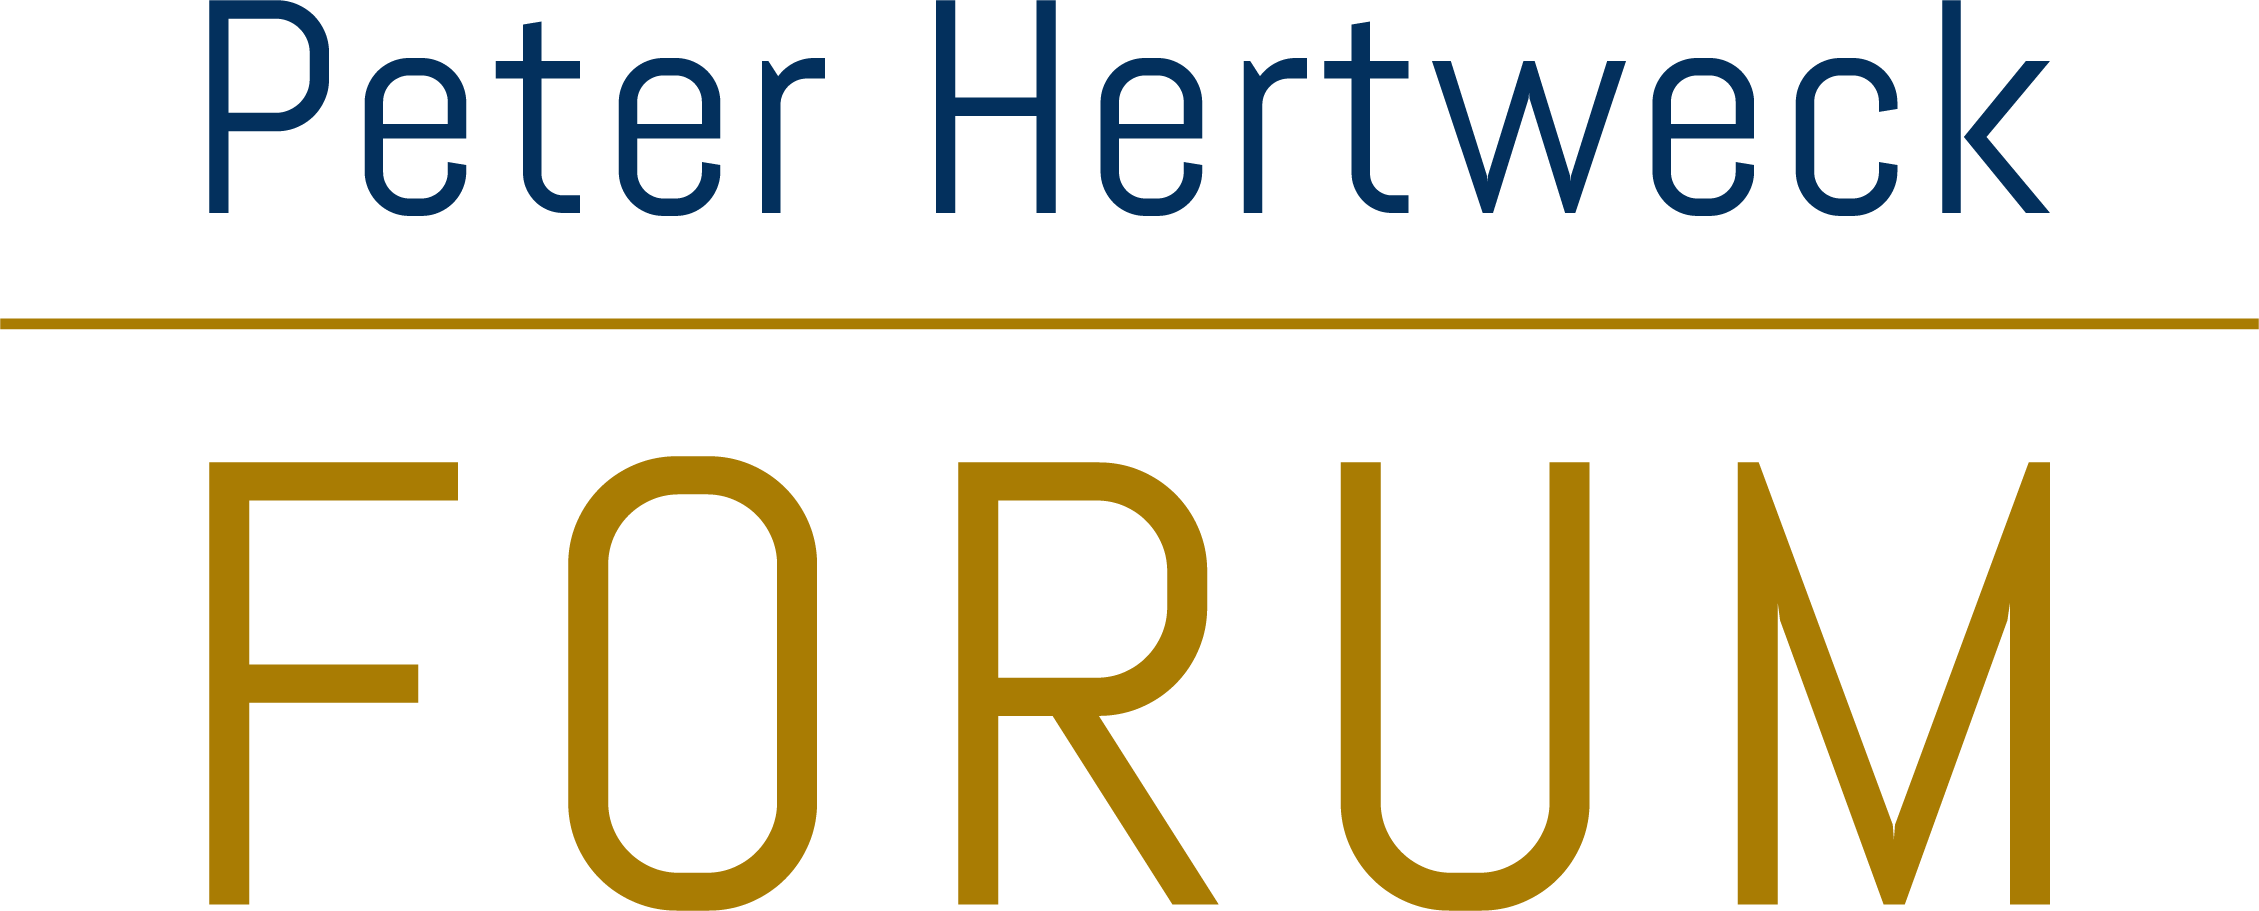 Peter Hertweck Forum / Nachfolgerforum